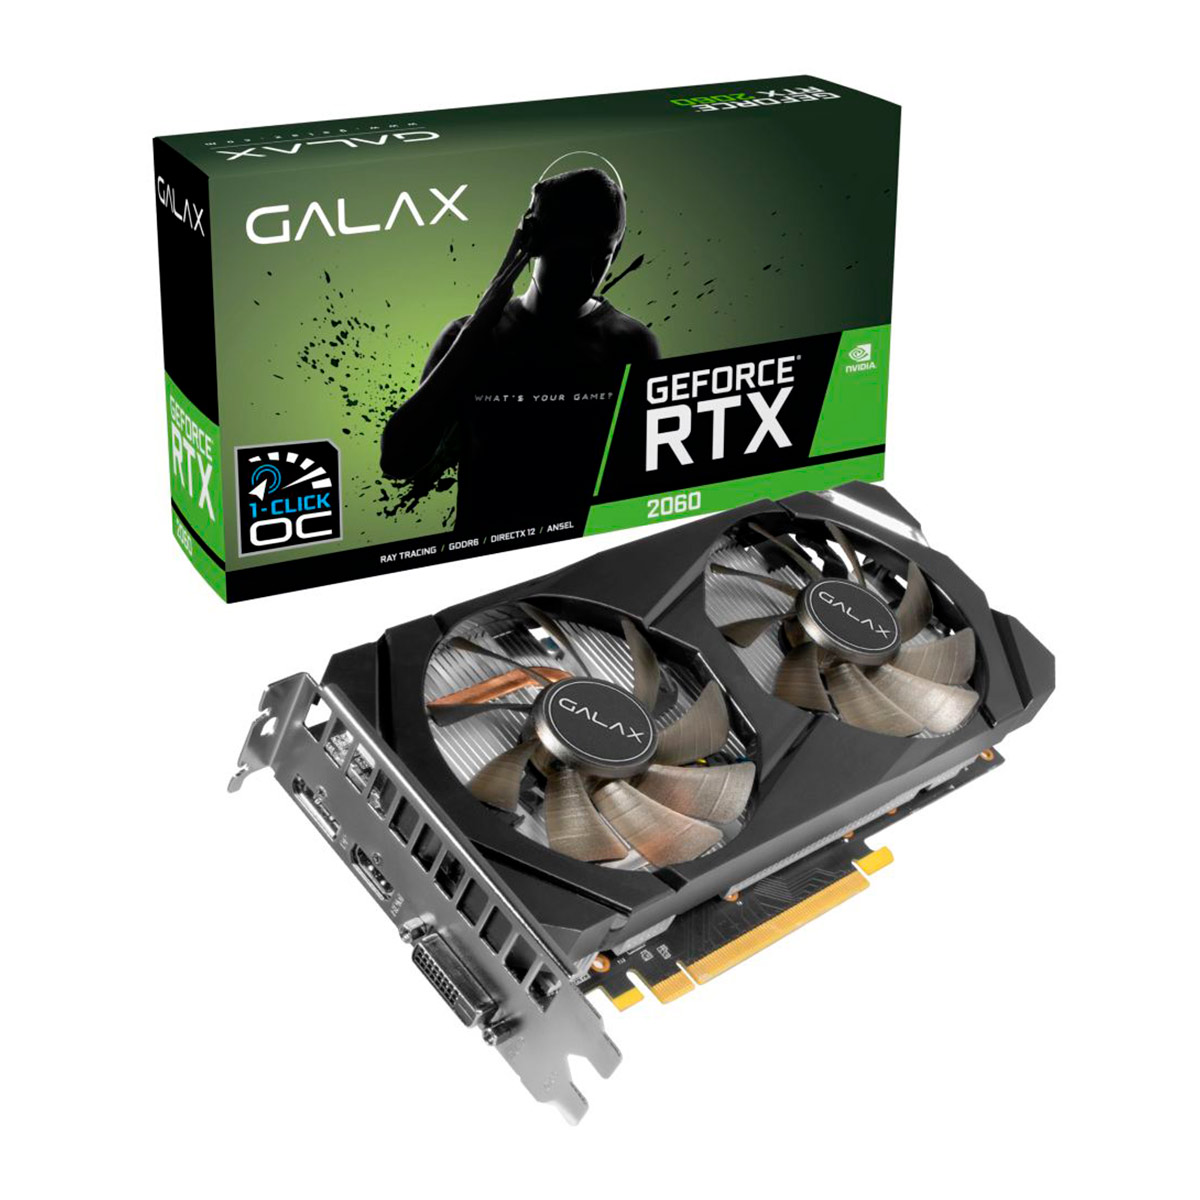 GeForce RTX 2060 6GB GDDR6 192bits - 1-Click OC - Galax 26NRL7HPX7OC - Selo LHR